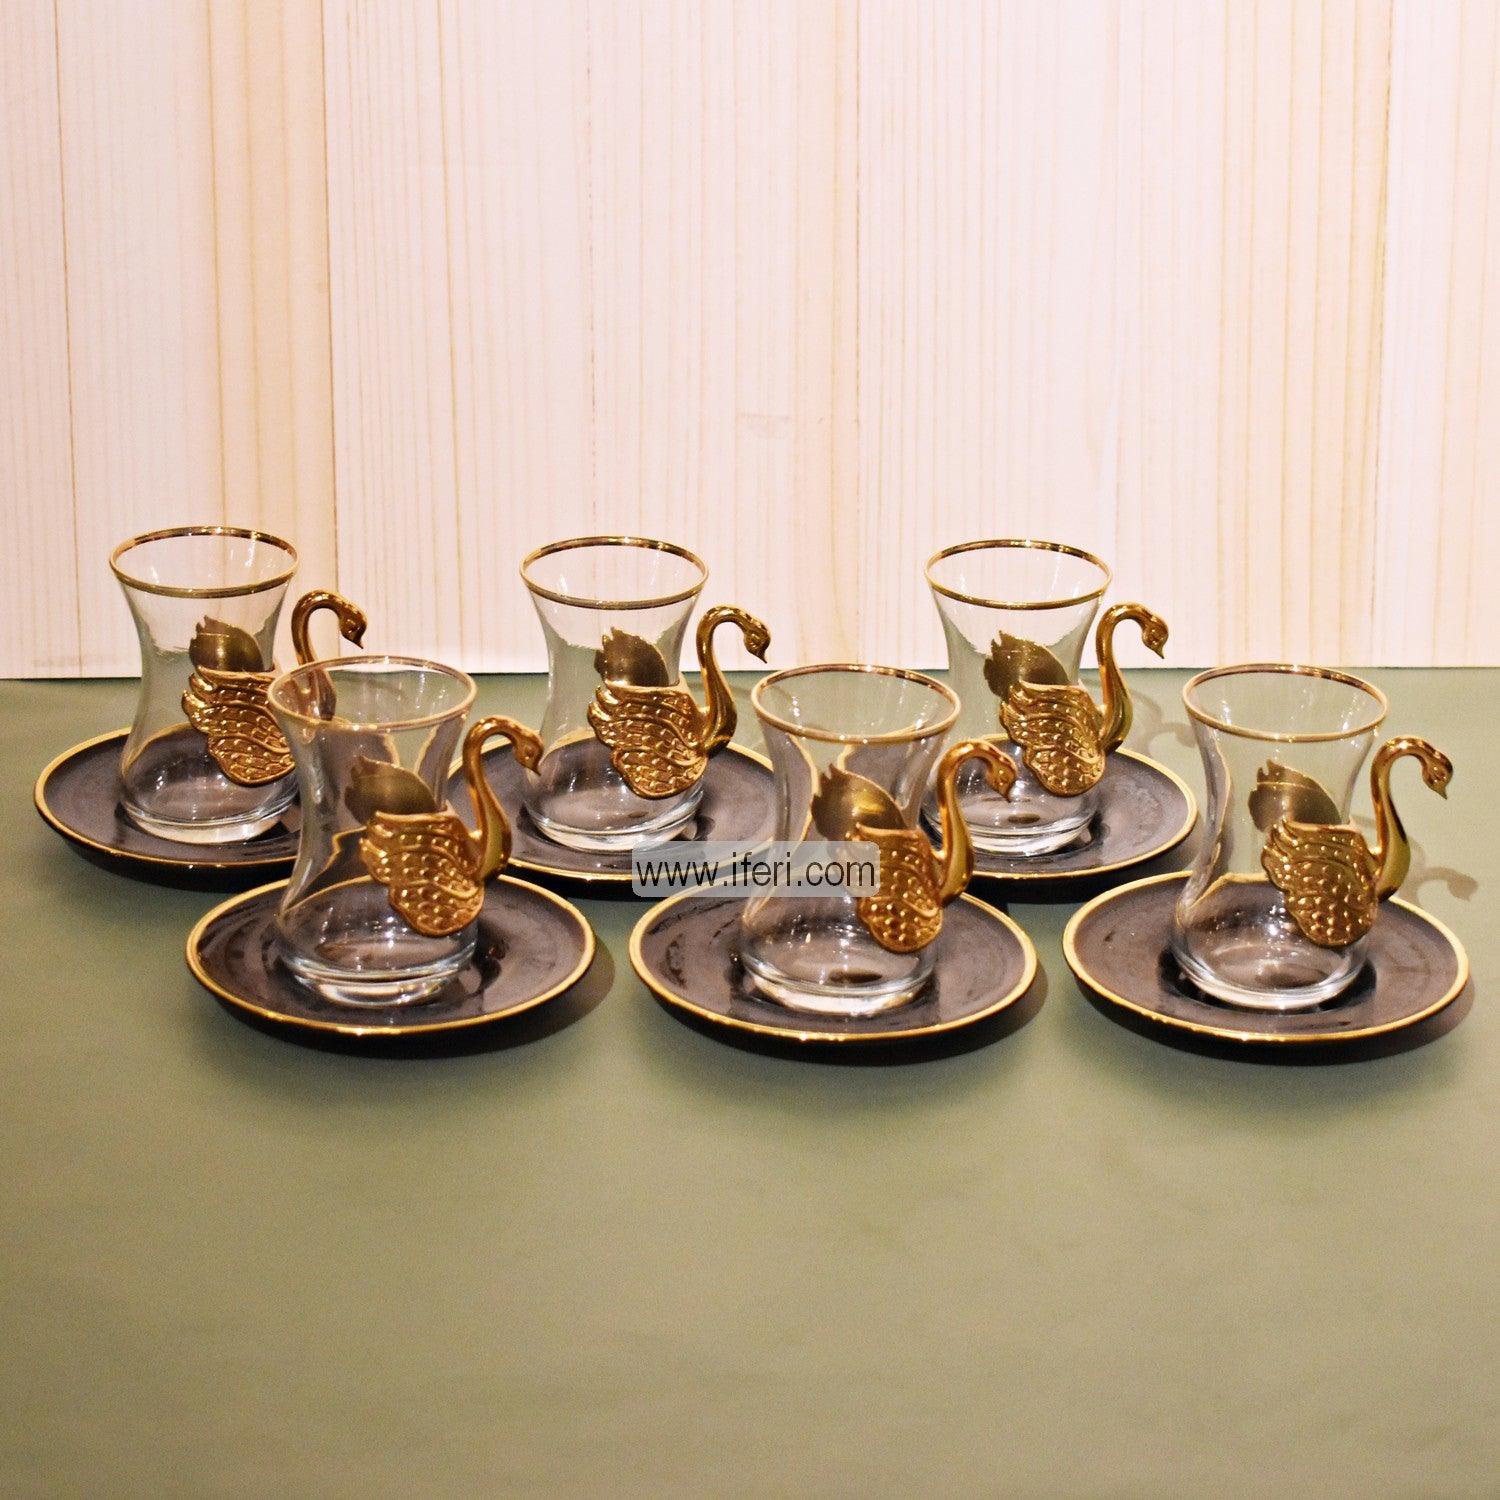 12 Pcs Exclusive Glass & Metal Turkish Tea Cup & Saucer Set GA2002 Price in Bangladesh - iferi.com